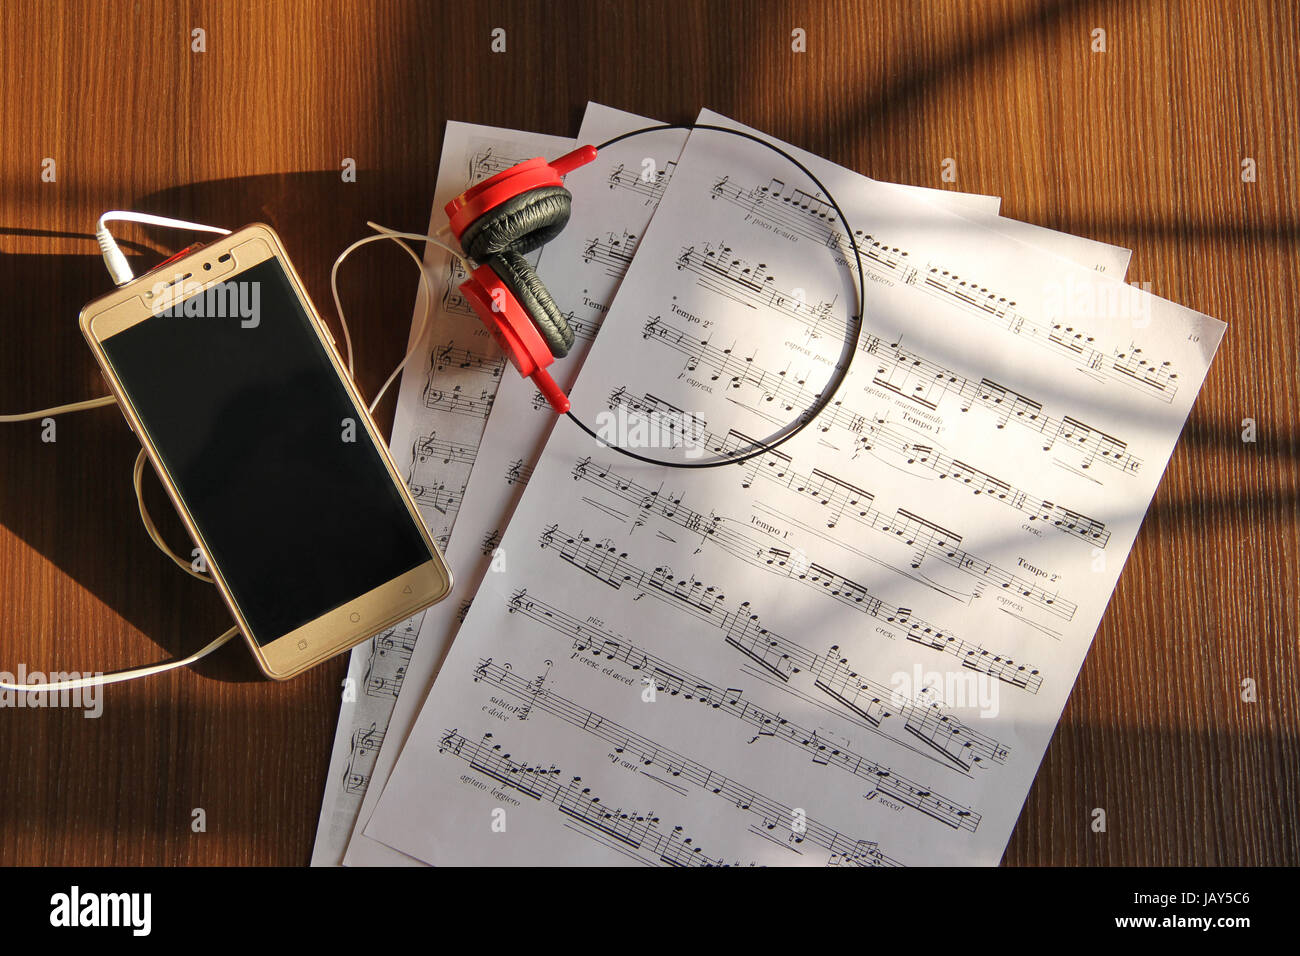 Vista superior móvil, auriculares y notas musicales Foto de stock